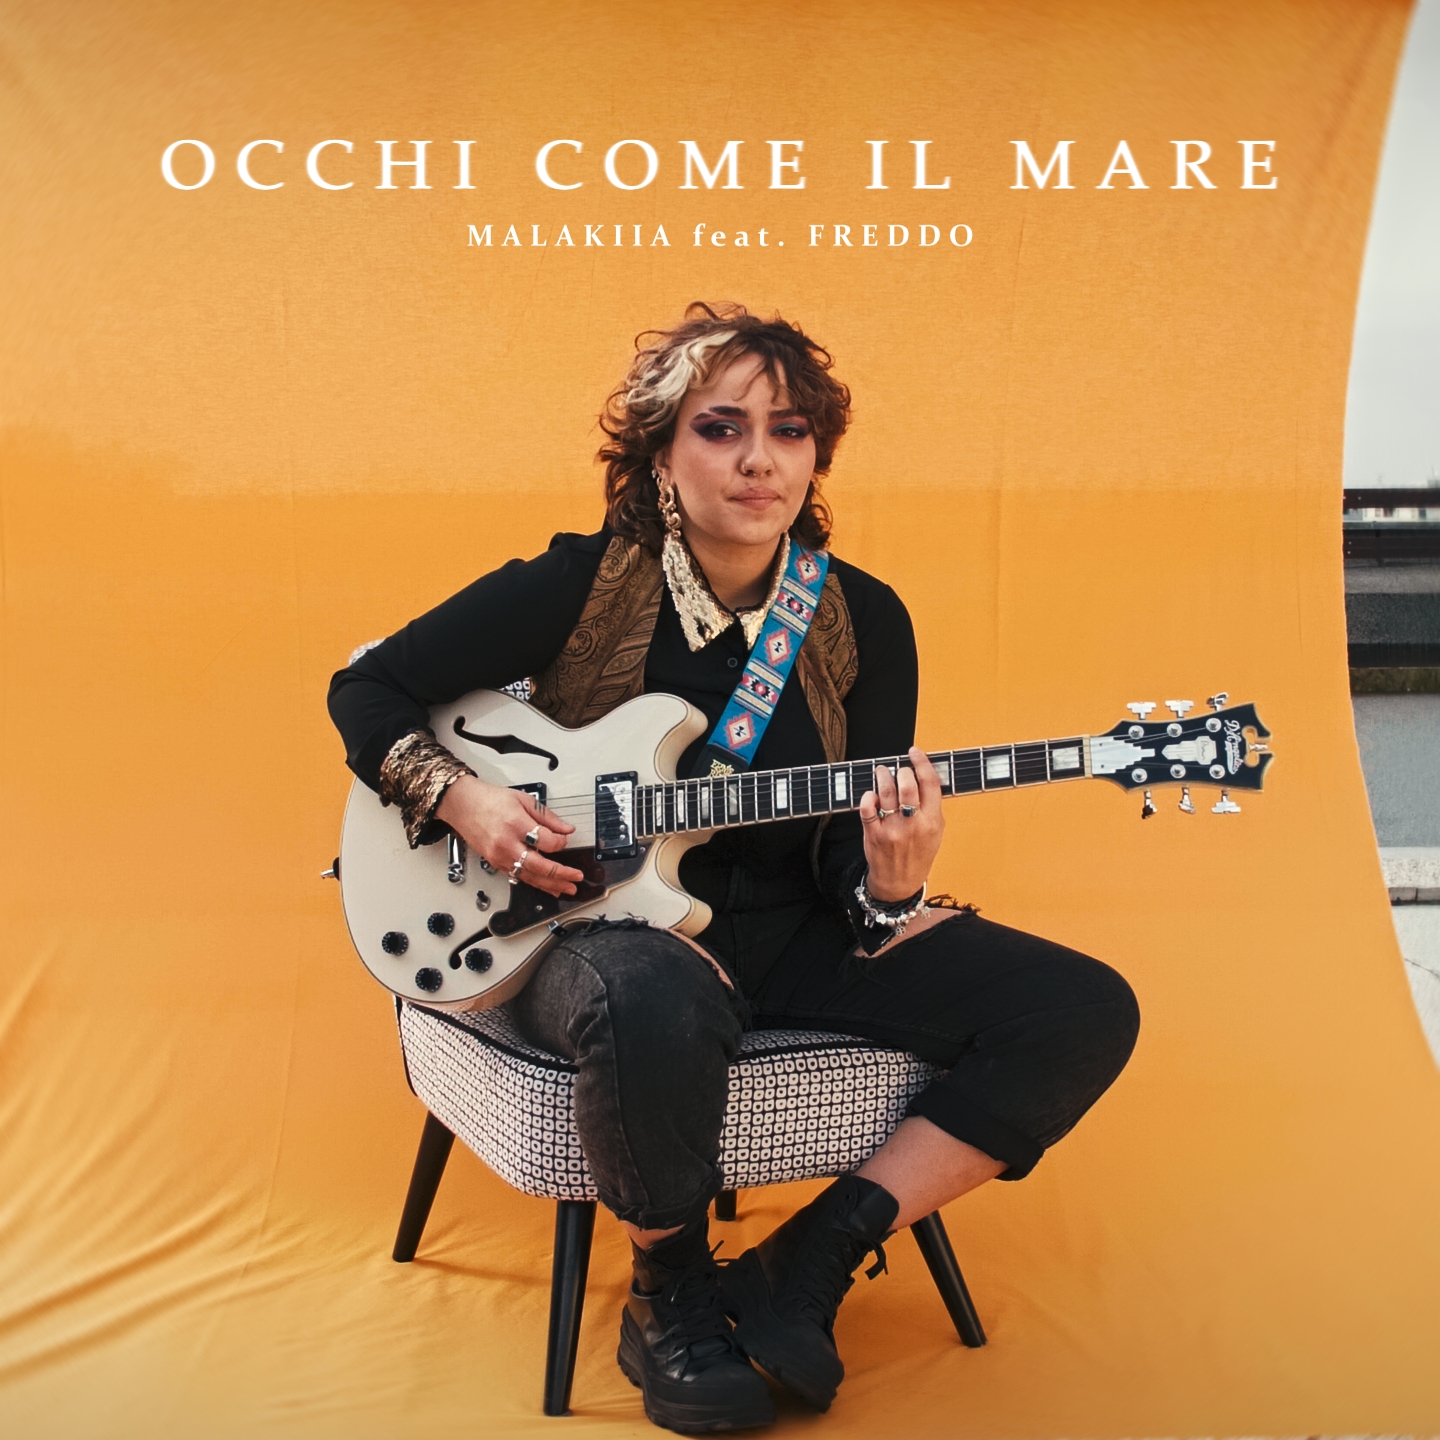 Malakiia Feat Freddo - Occhi Come Il Mare è il nuovo singolo, dal 10 Marzo su tutte le piattaforme digitali e in radio